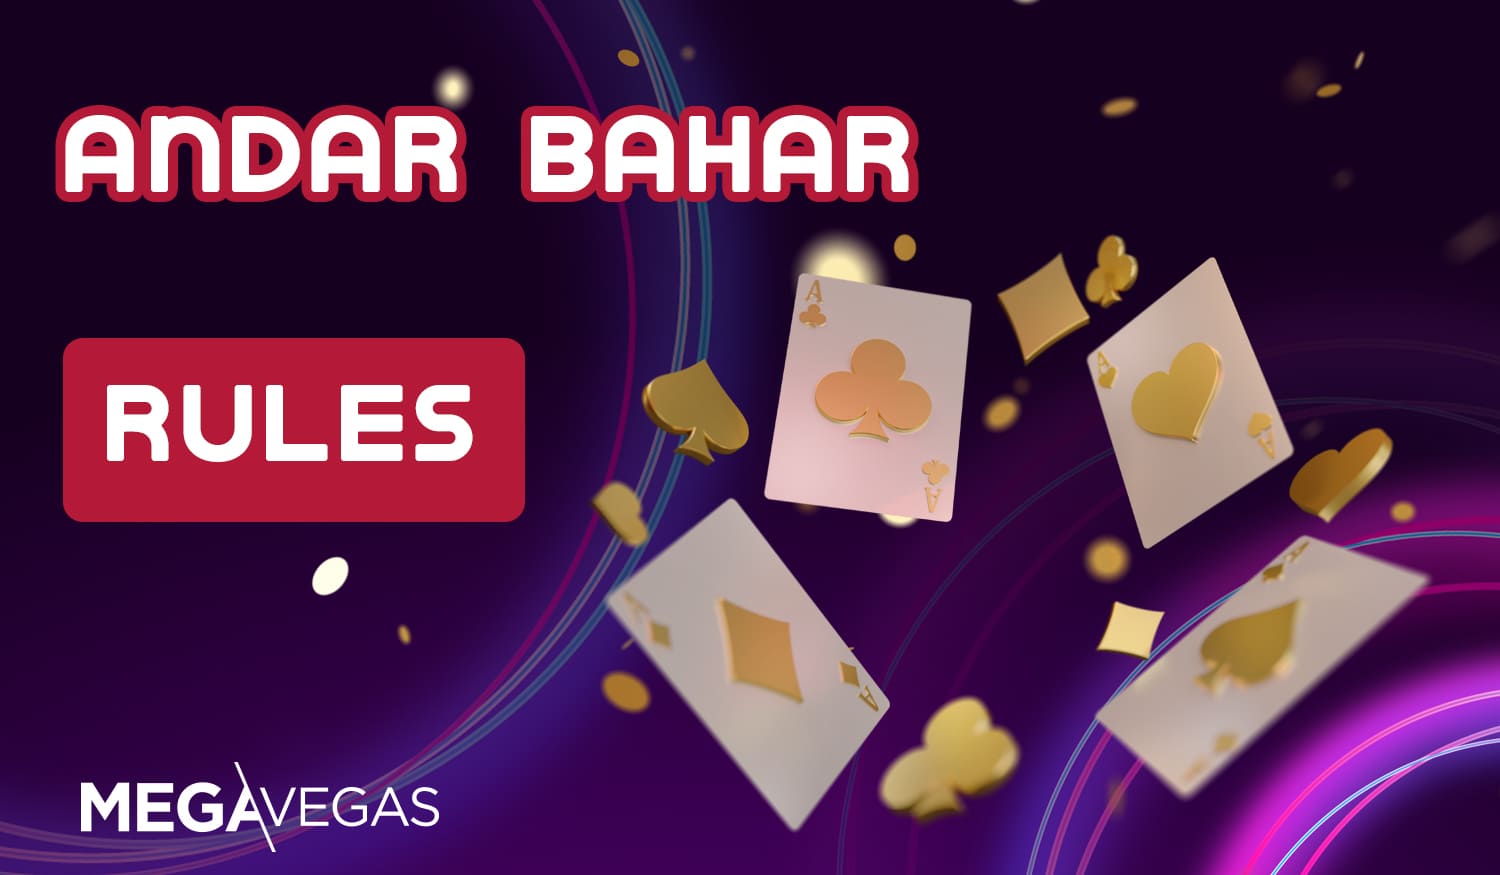 Andar Bahar game review at Mega Vegas online casino site